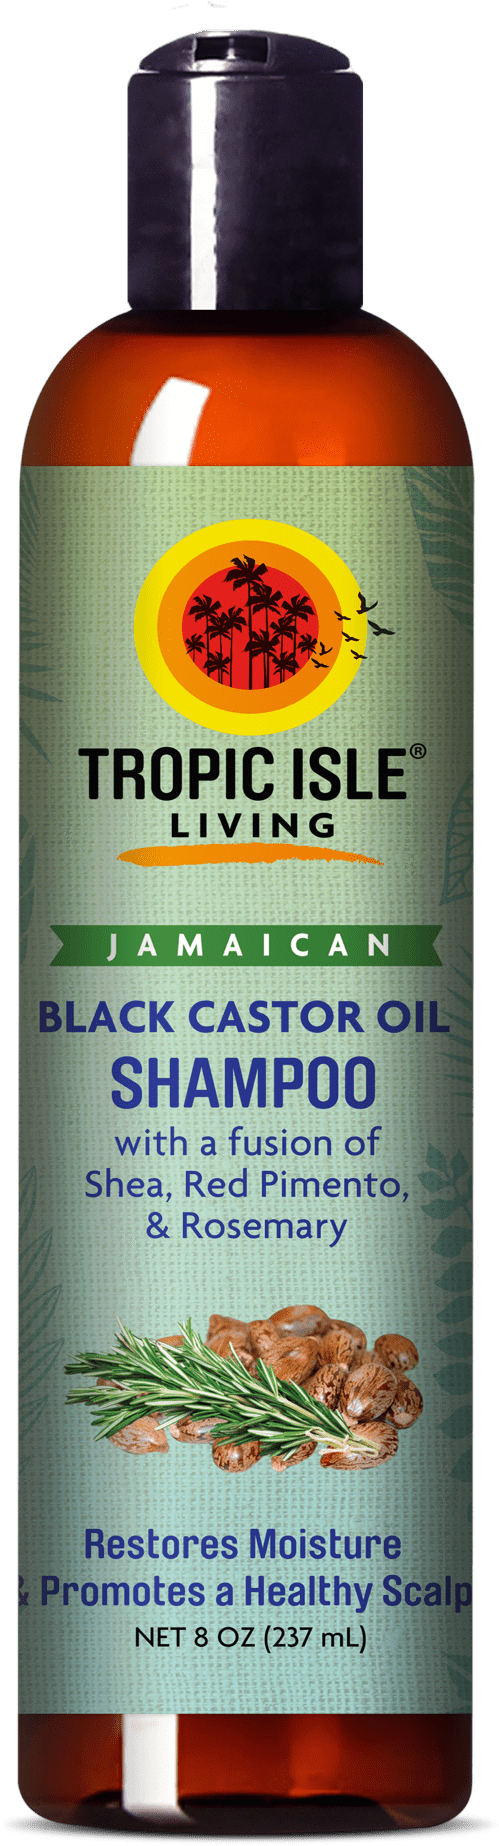 Jamaican Black Castor Oil Shampoo Bottle PNG